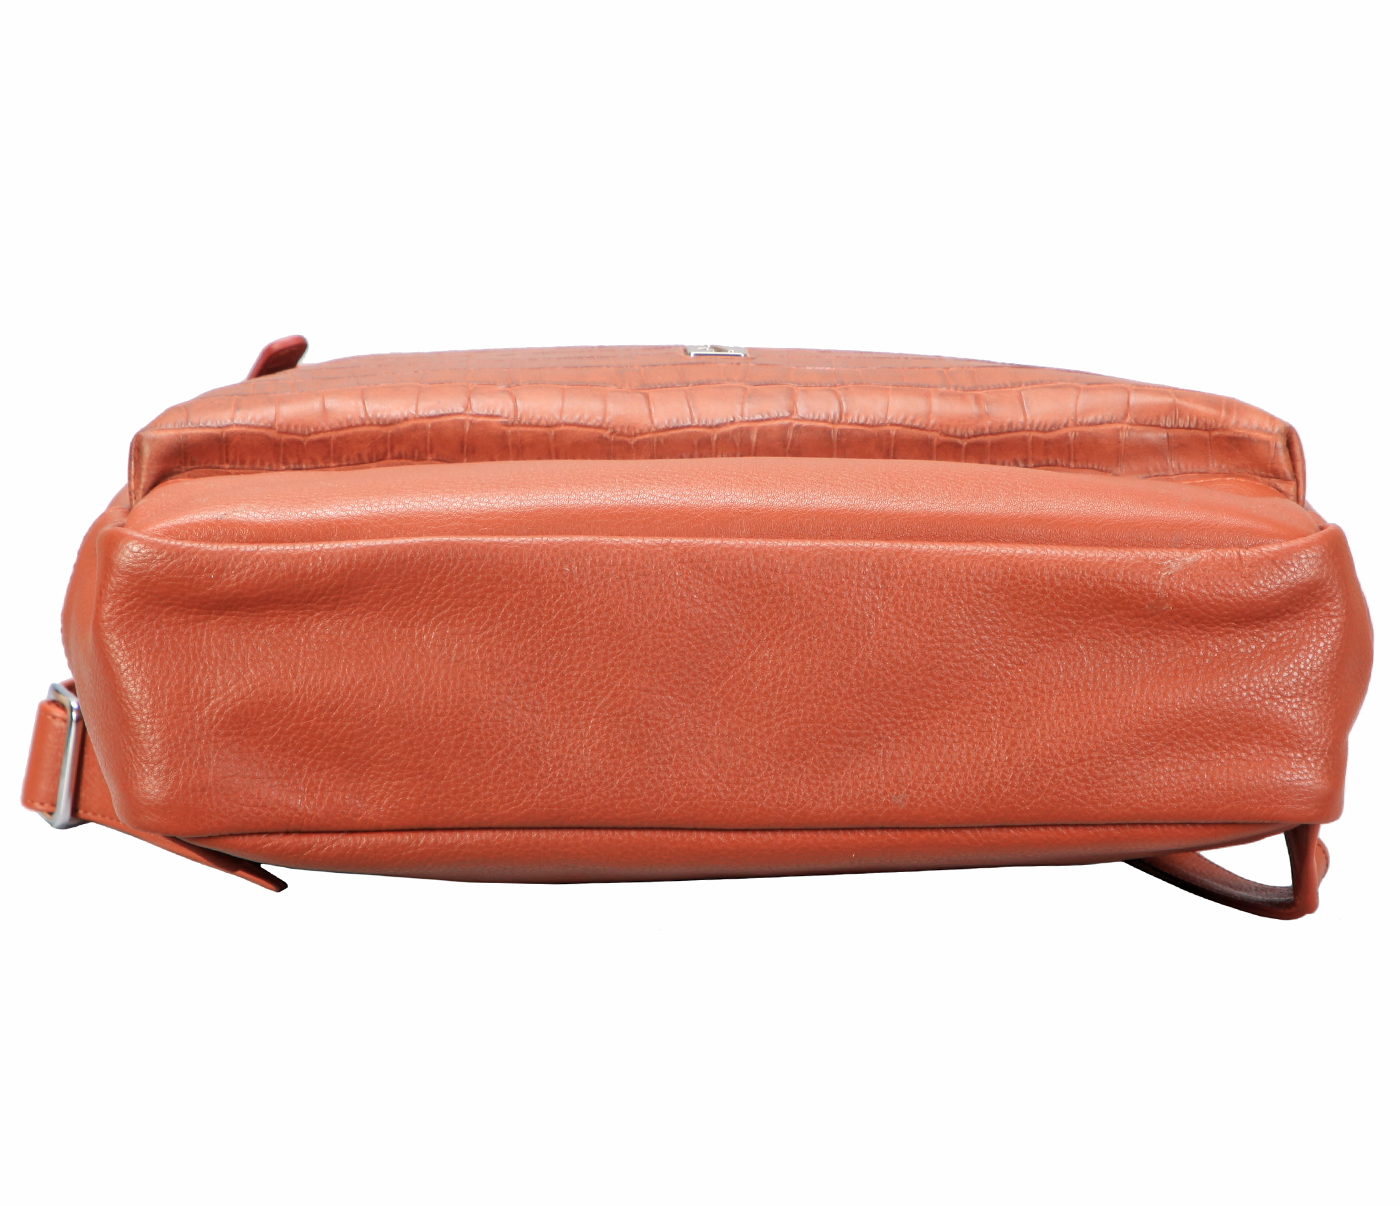 Back Pack-Bennett-Unisex Genuine Leather Backpack for Laptop - Tan